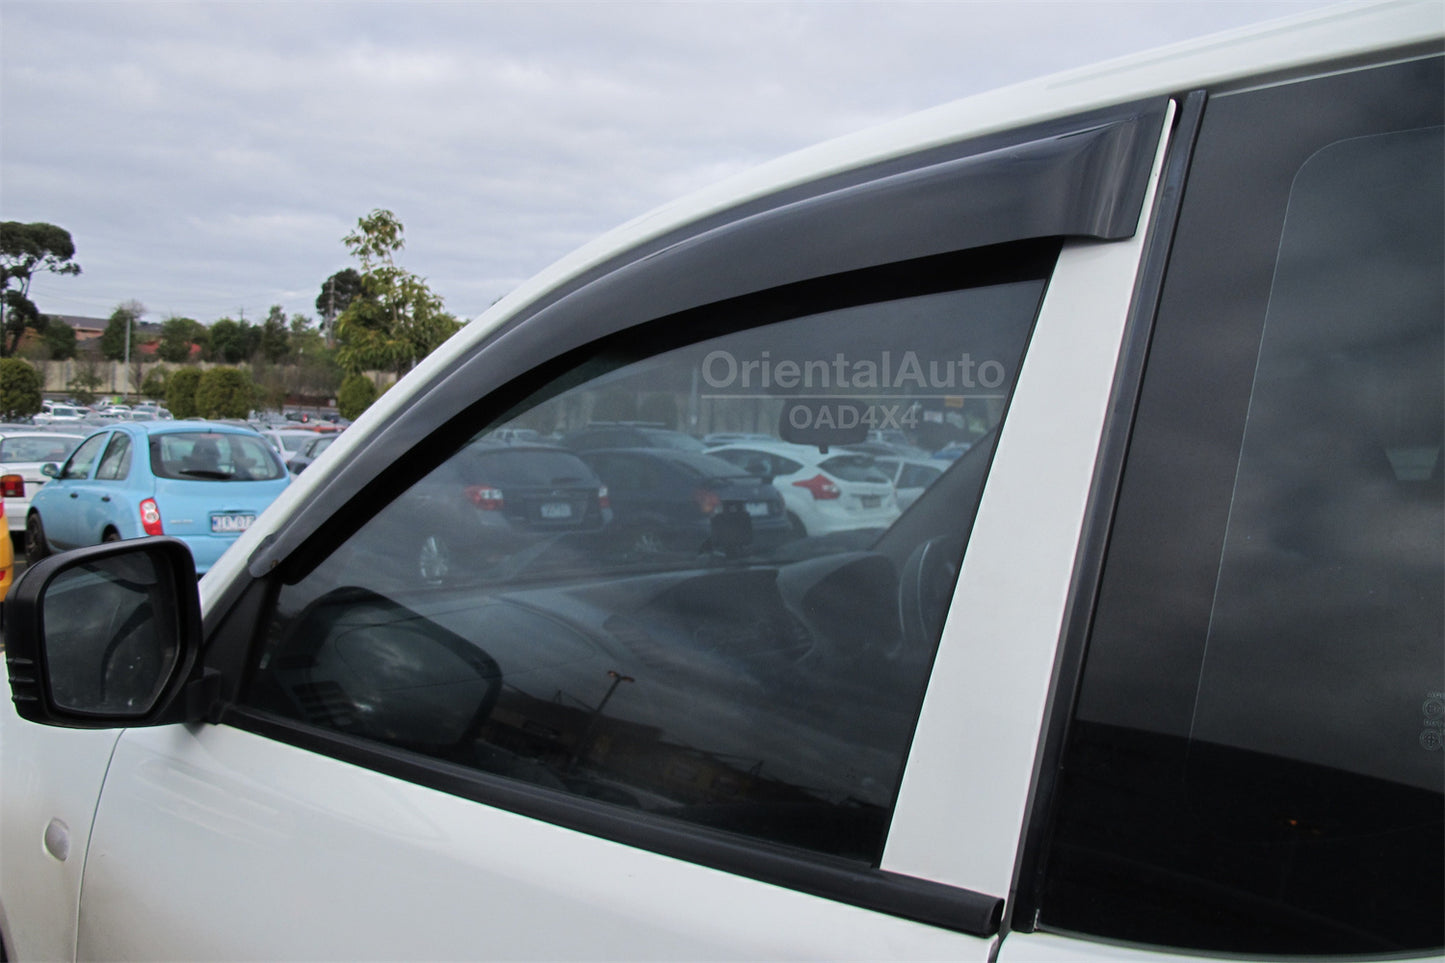 Bonnet Protector & Weathershields Weather Shields Window Visor for Mitsubishi Triton Extra Cab 2006-2015 2pcs